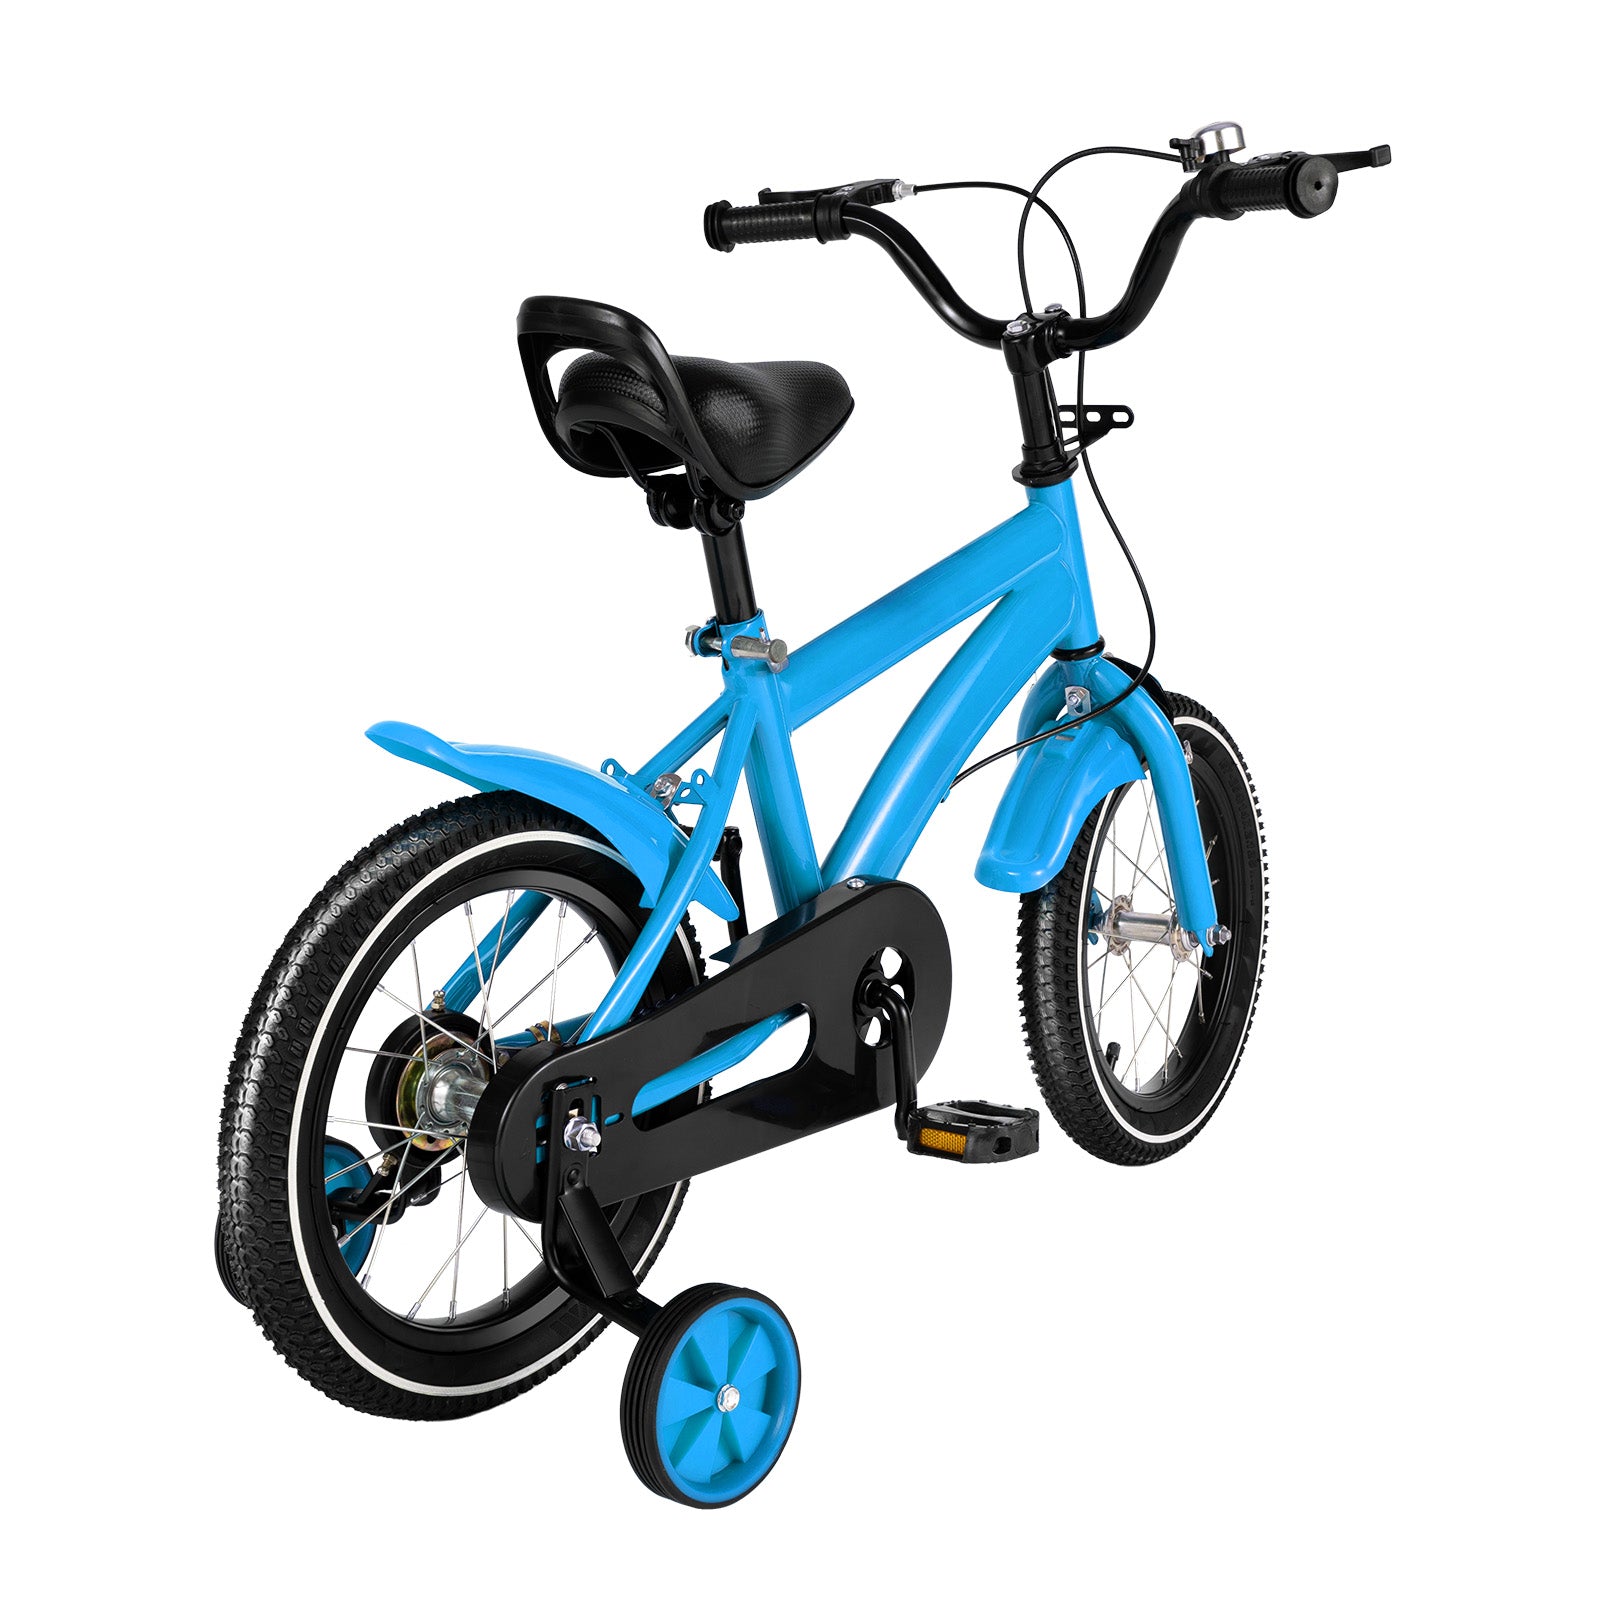 14 Pollici Bicicletta per Bambini, Bicicletta di Equilibrio per Ragazzi e Ragazze, Stabilizzatori in Acciaio, Antiscivolo, Colore Blu